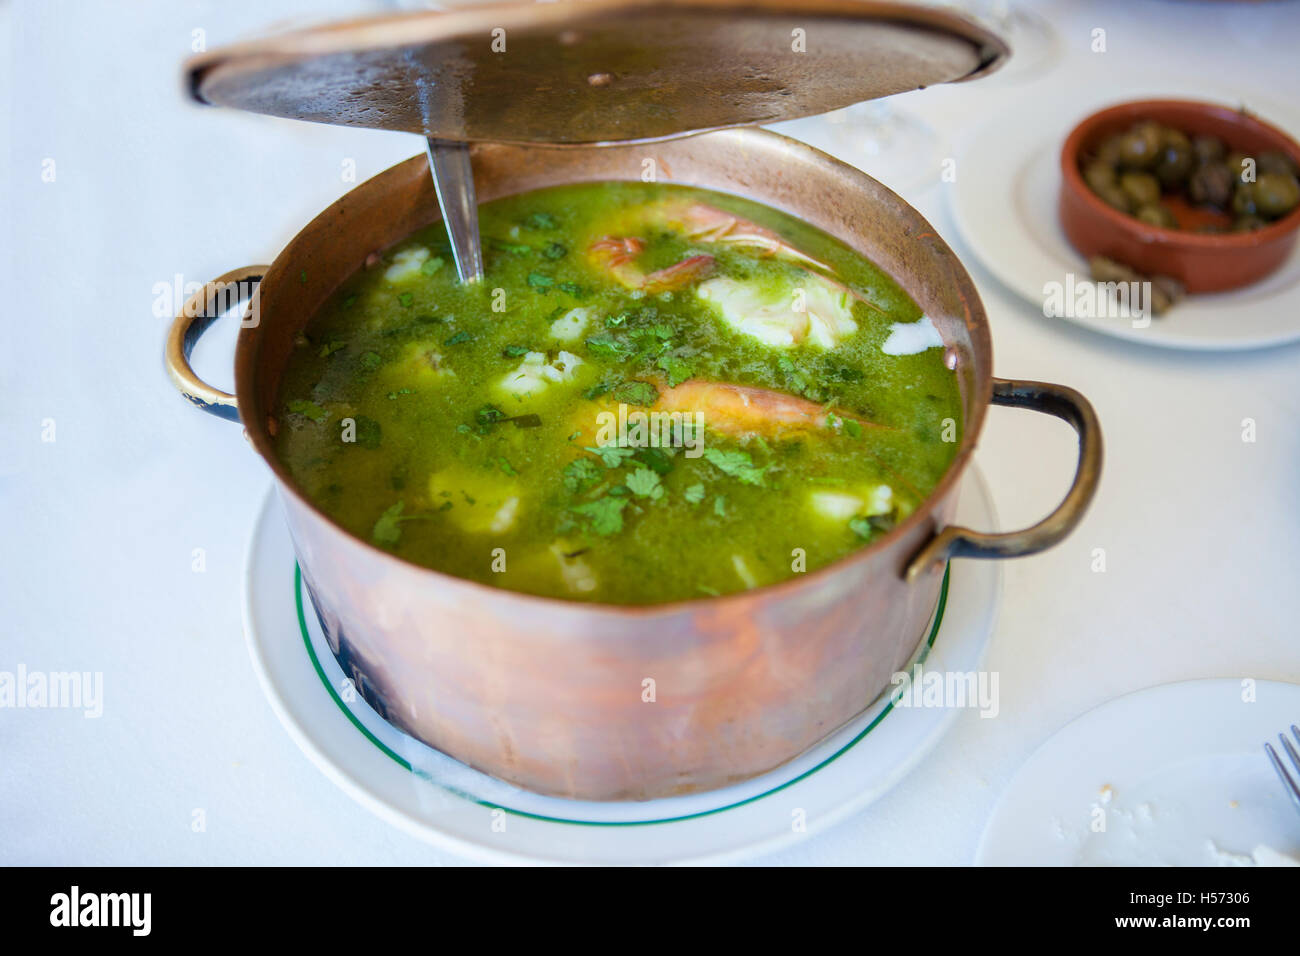 Arroz de Tamboril or soupy seafood rice, portuguese recipe. Opening casserole lid Stock Photo